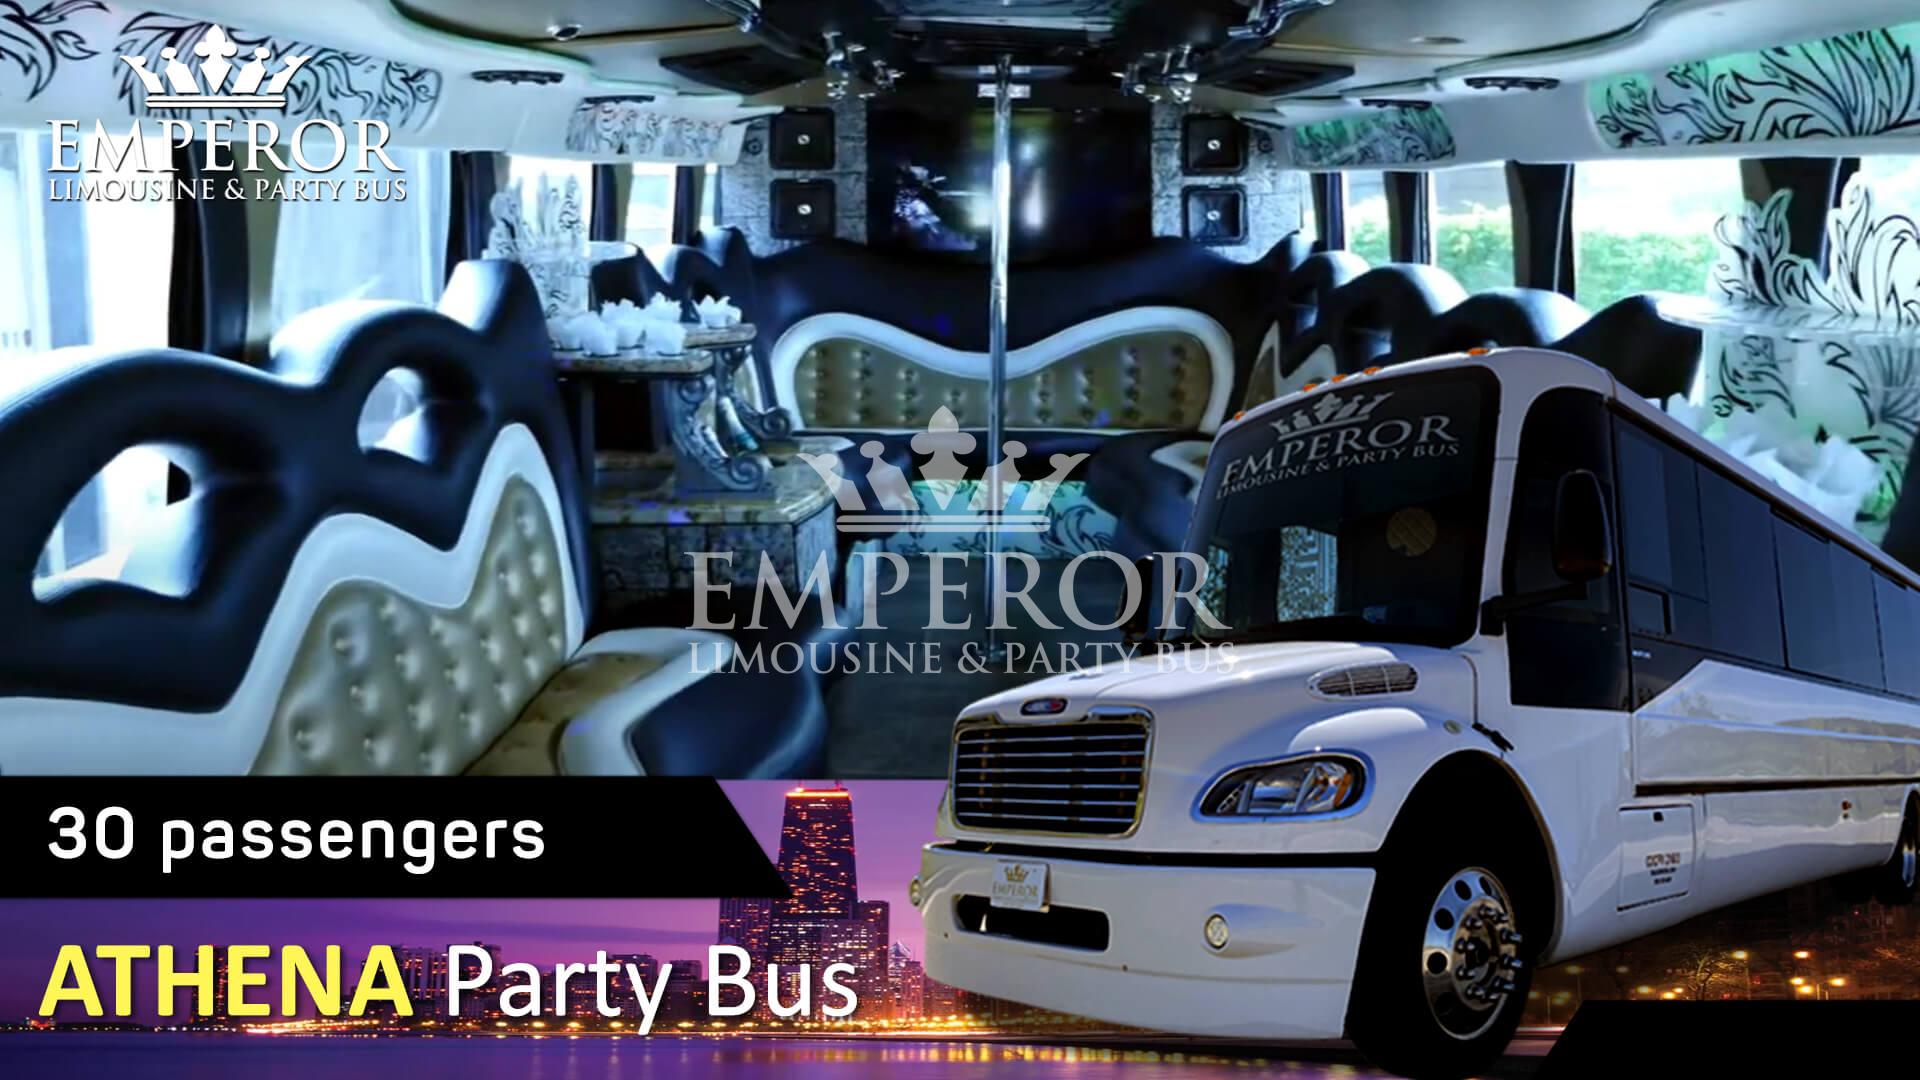 Party bus rental service in Alsip - Athena Edition